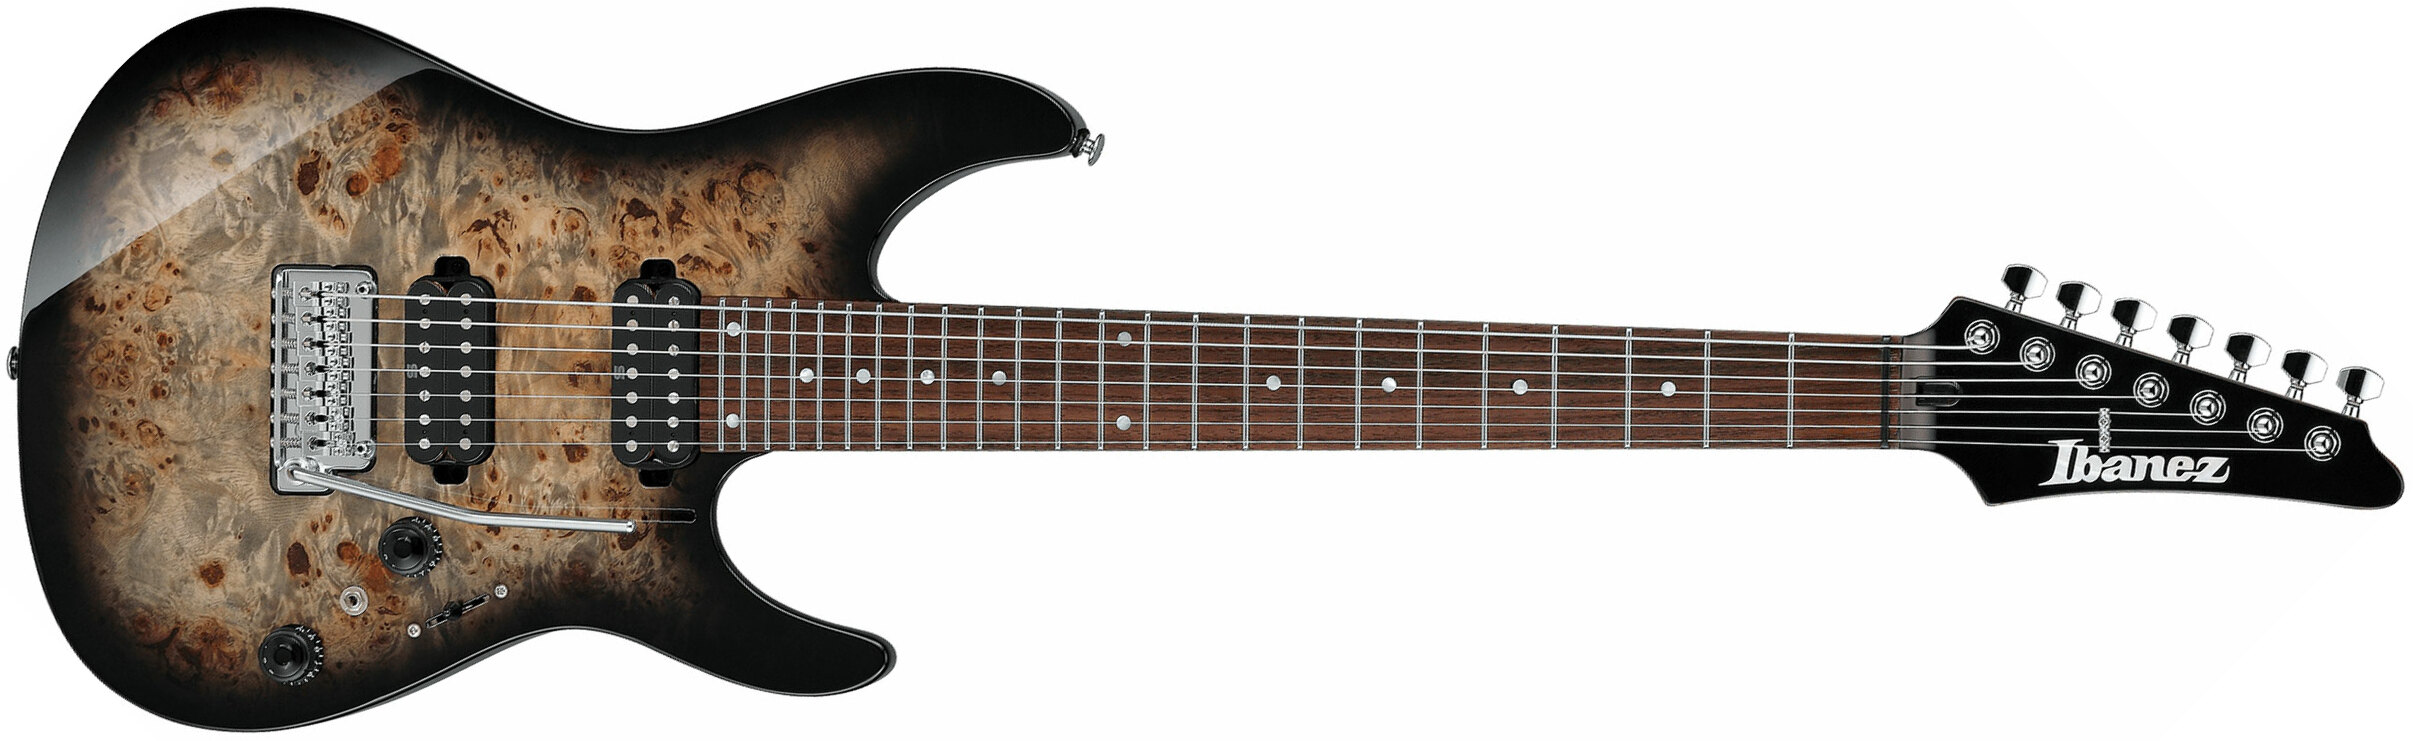 Ibanez Az427p1pb Ckb Premium 7c Hh Seymour Duncan Trem Rw - Charcoal Black Burst - Guitarra eléctrica de 7 cuerdas - Main picture